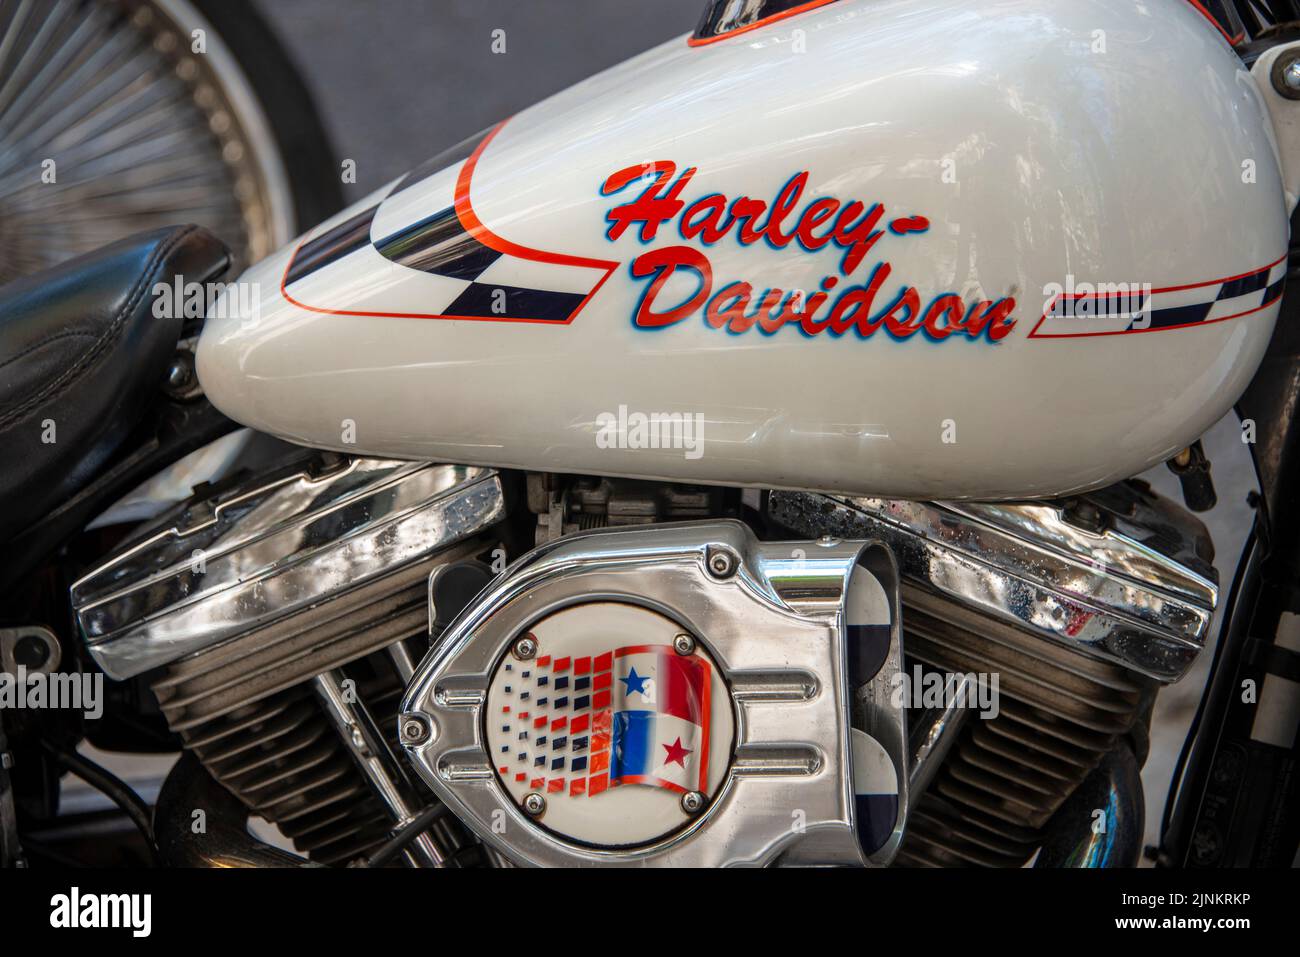 Primer plano de una motocicleta Harley Davidson. Foto de stock